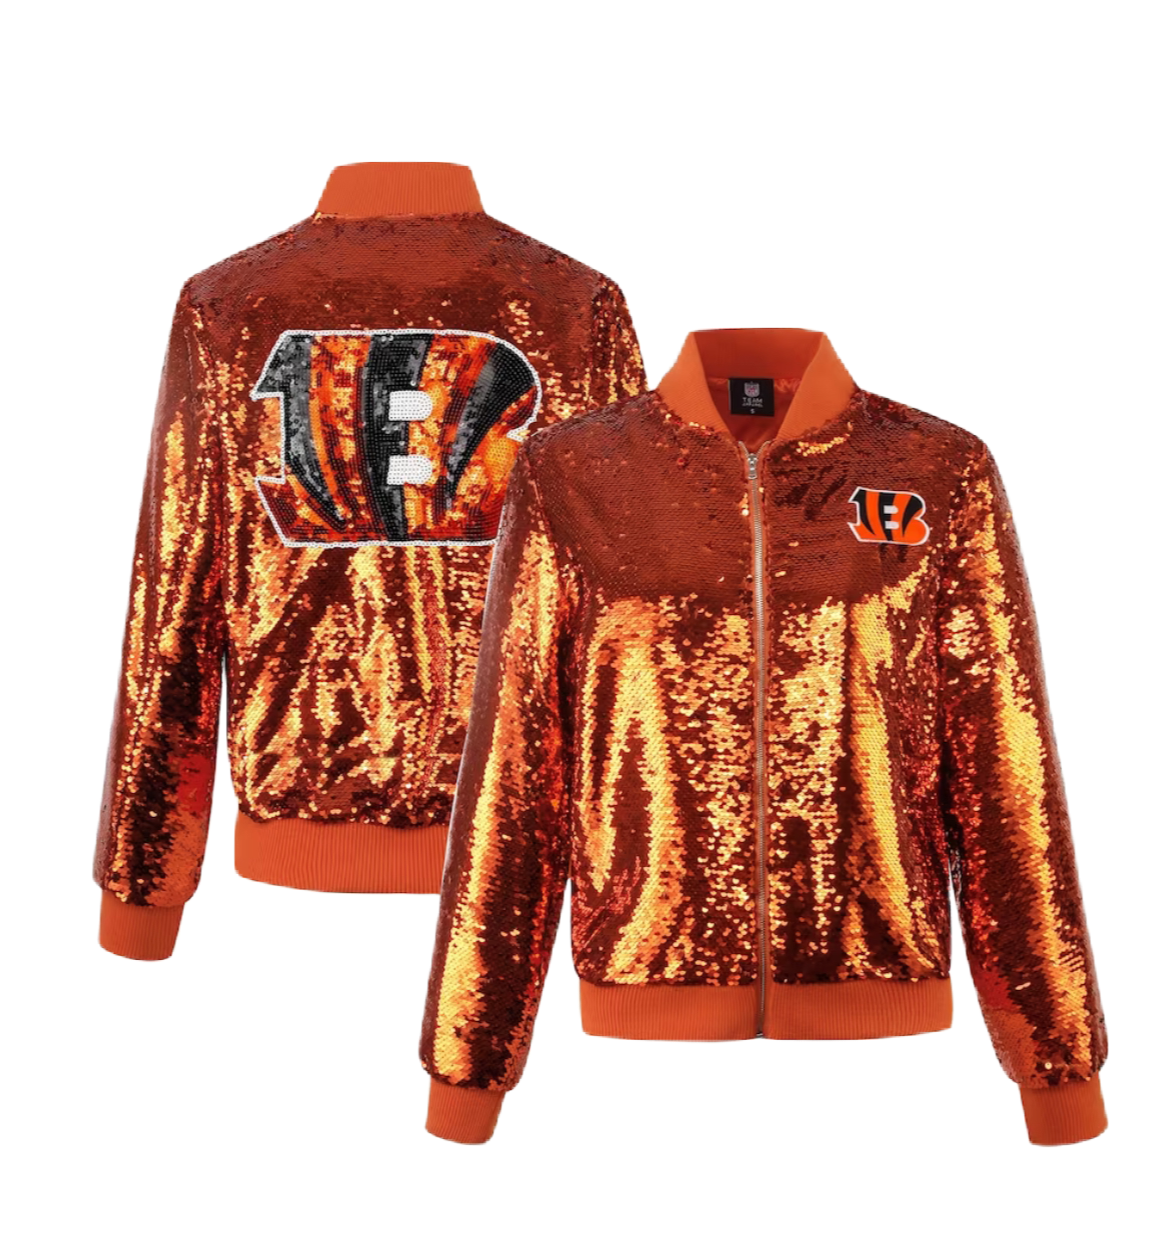 Cincinnati Bengals sequin jacket